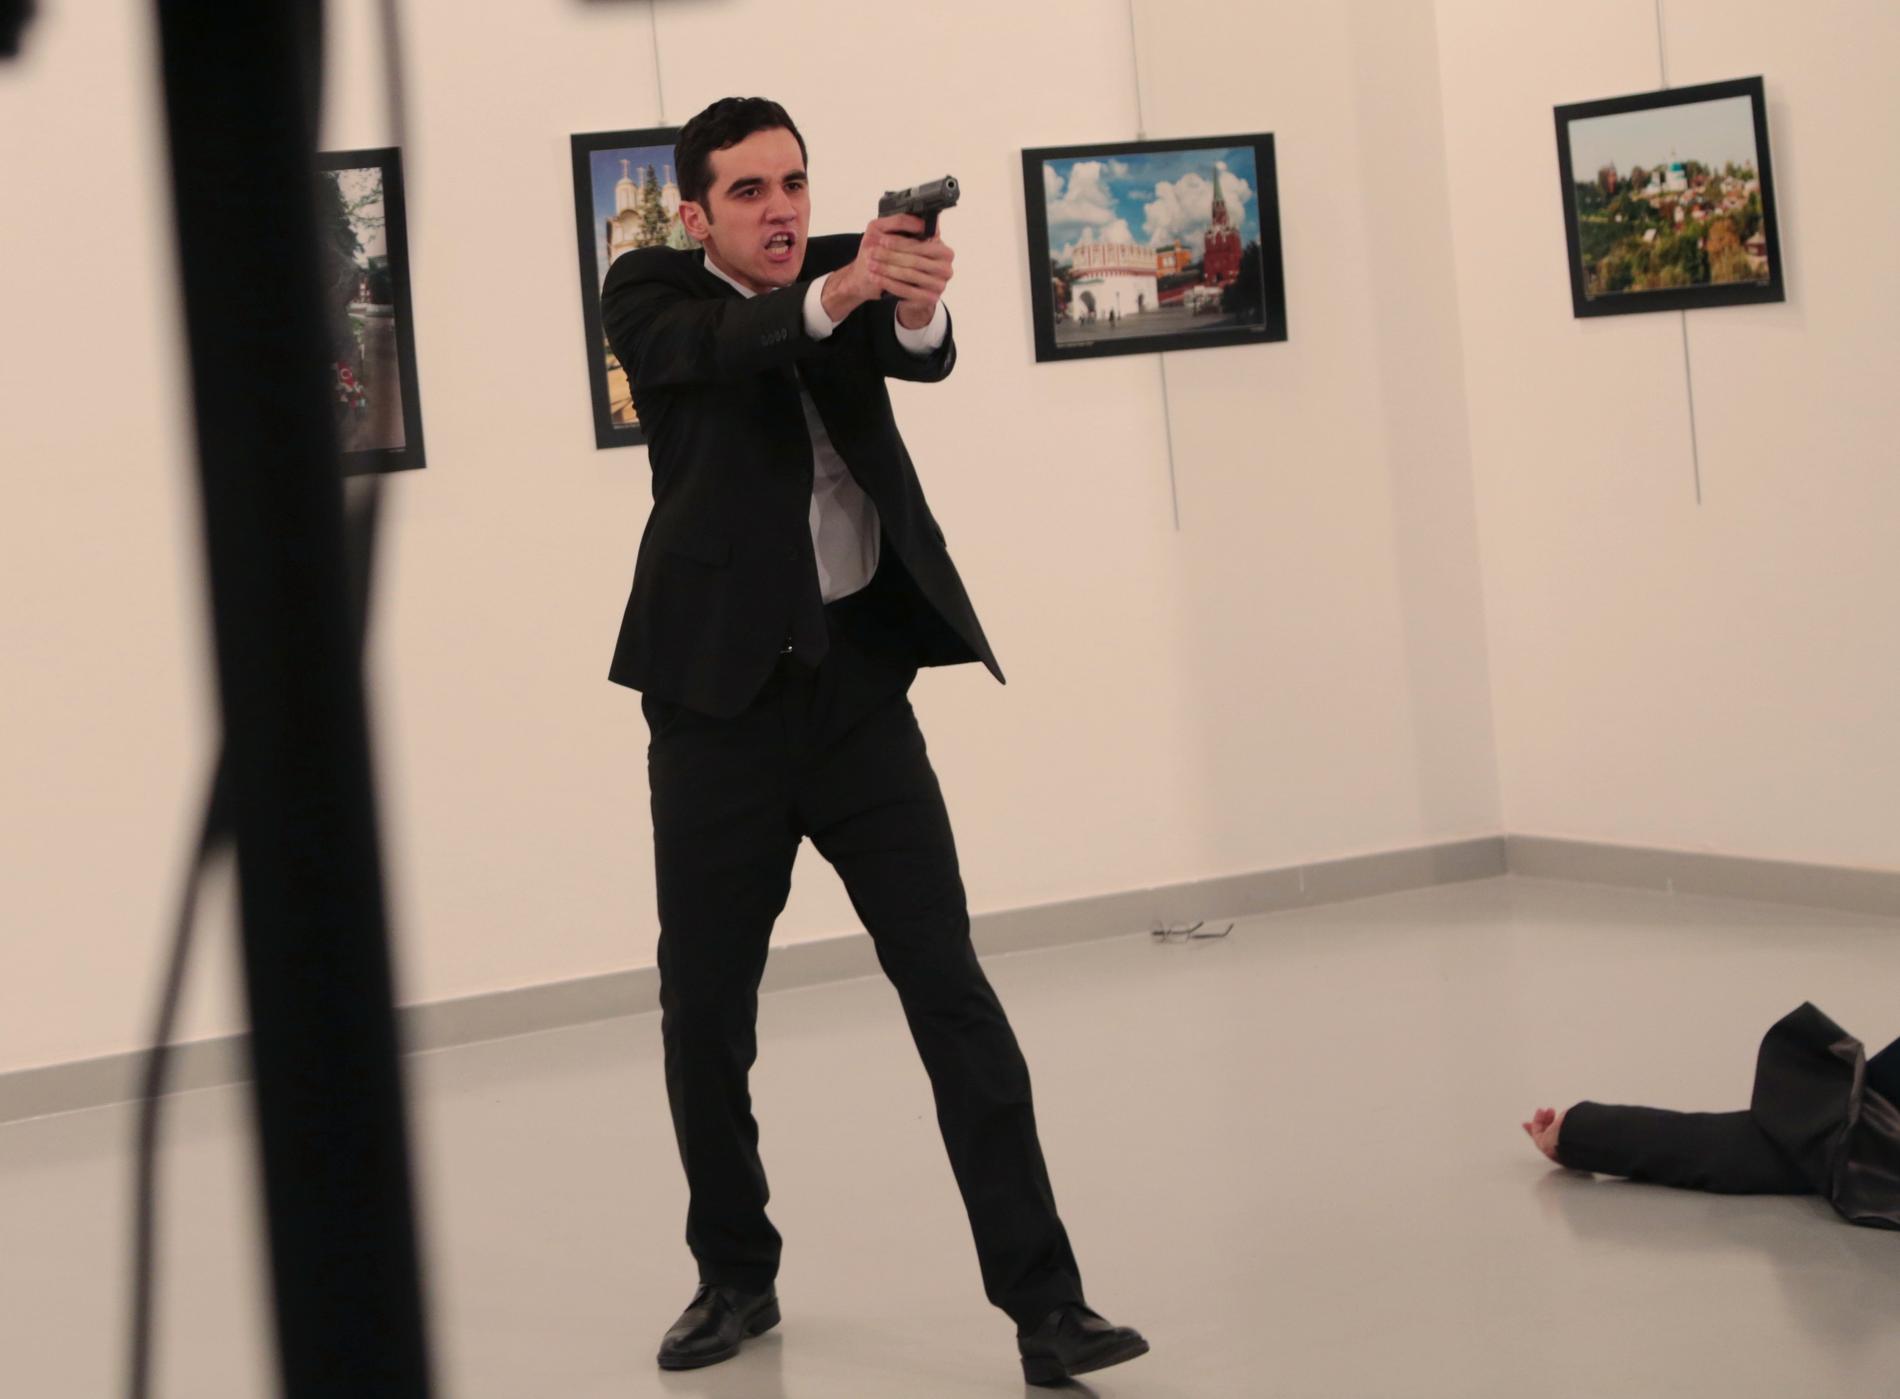 - SKJØT: Ifølge flere medier skal dette være gjerningsmannen som skjøt og drepte den russiske ambassadøren (liggende på gulvet).